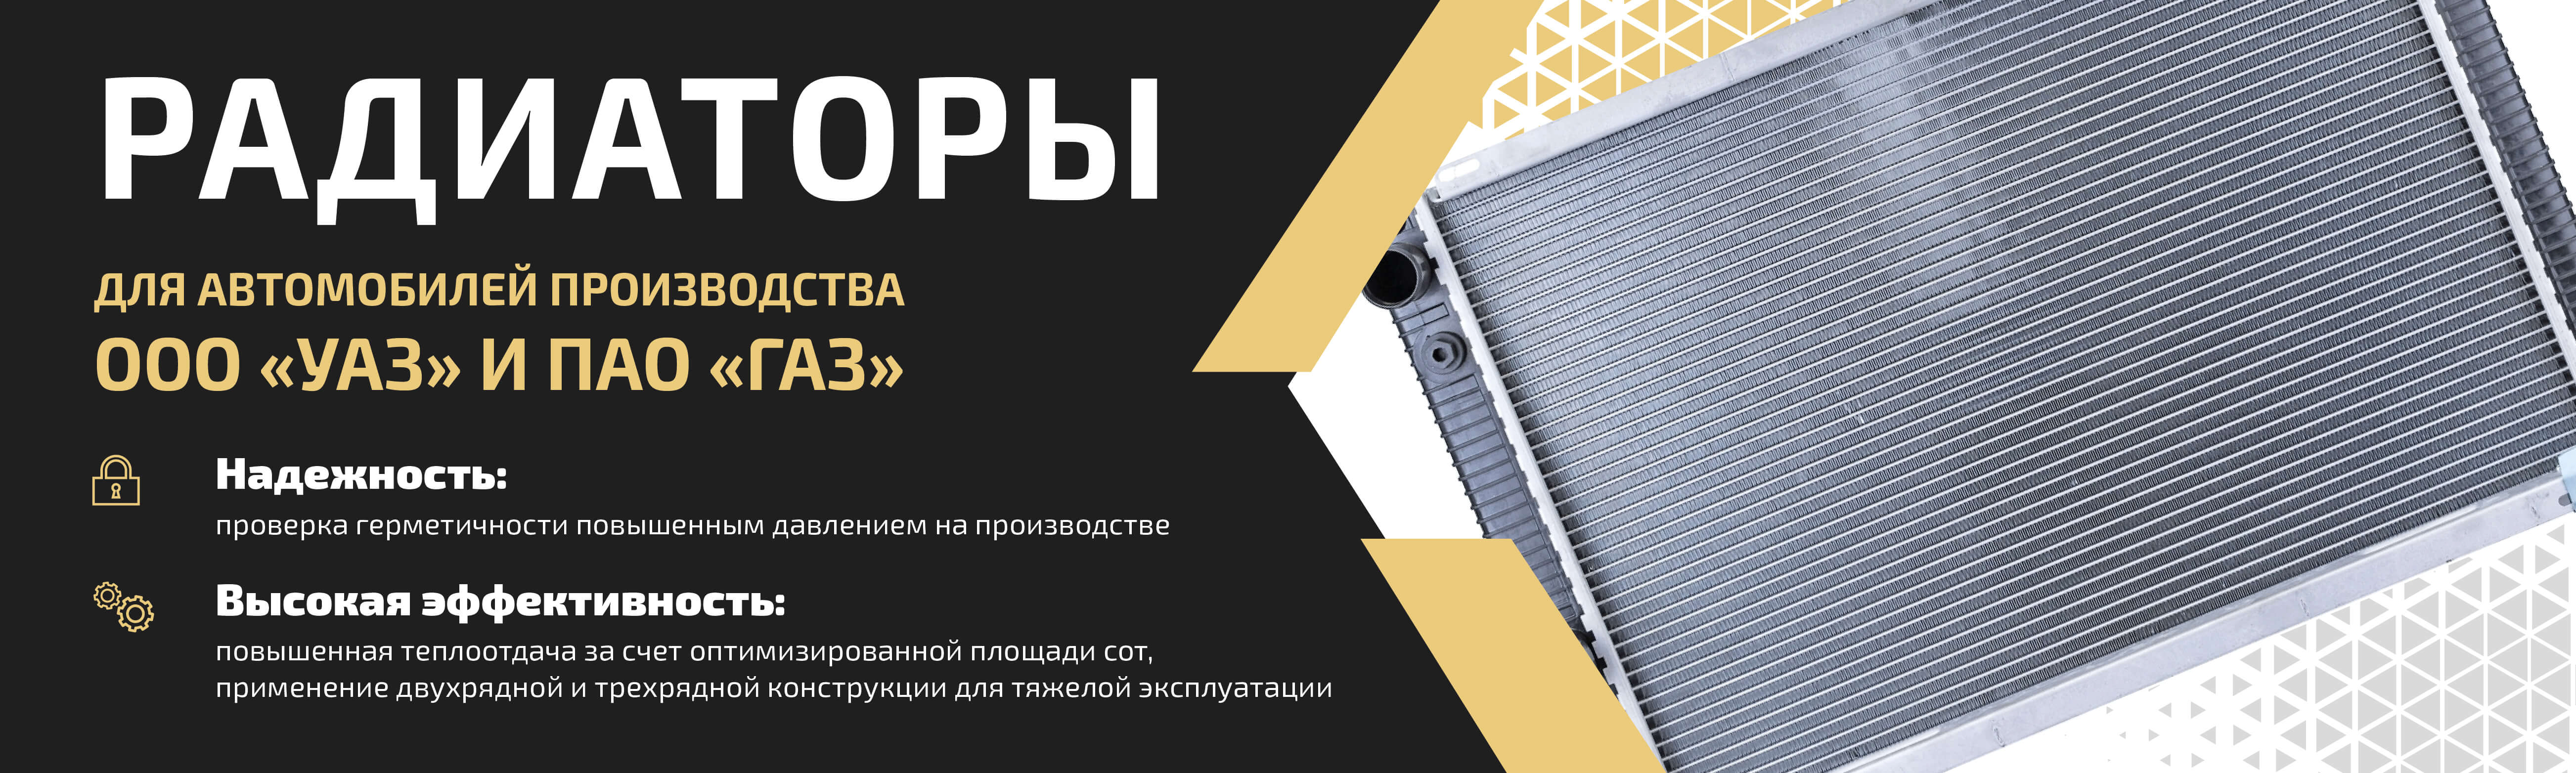 Вентиляция и отопление для ГАЗ и УАЗ ⚙ — купить в Санкт-Петербурге, цены в Metalpart.ru